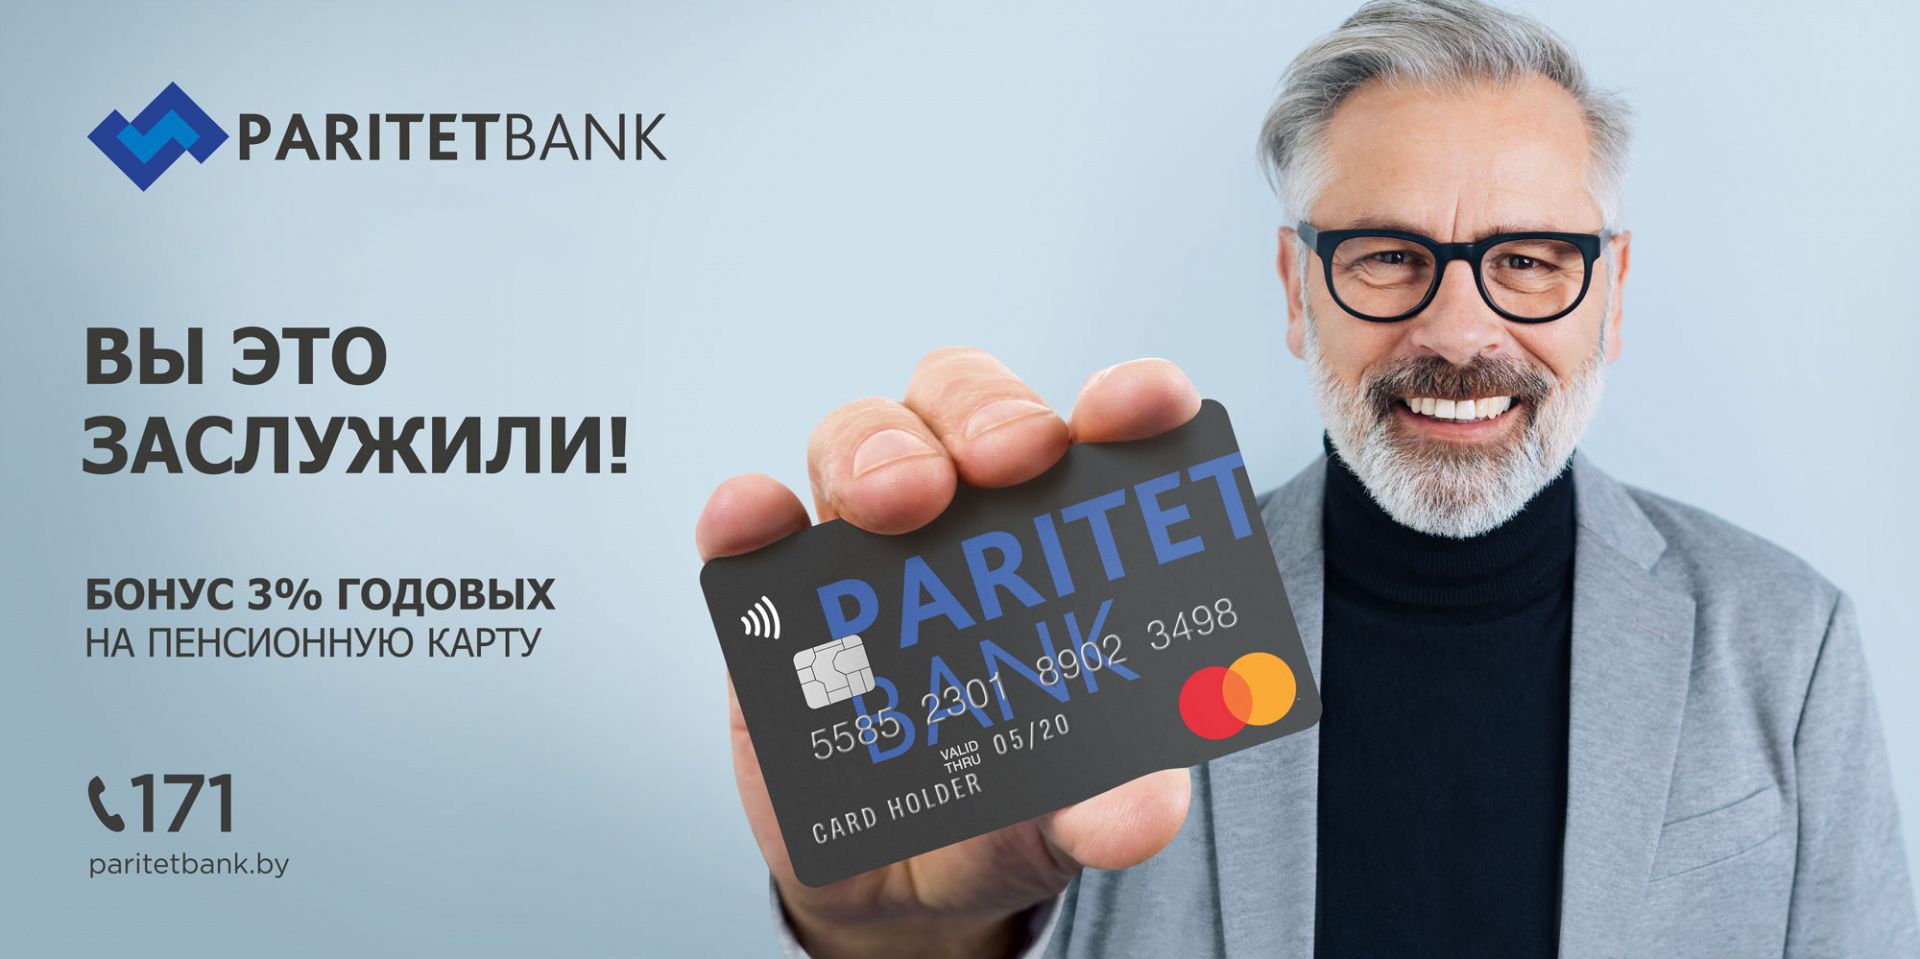 Paritetbank_KV_Zaslujili_6x3.jpg